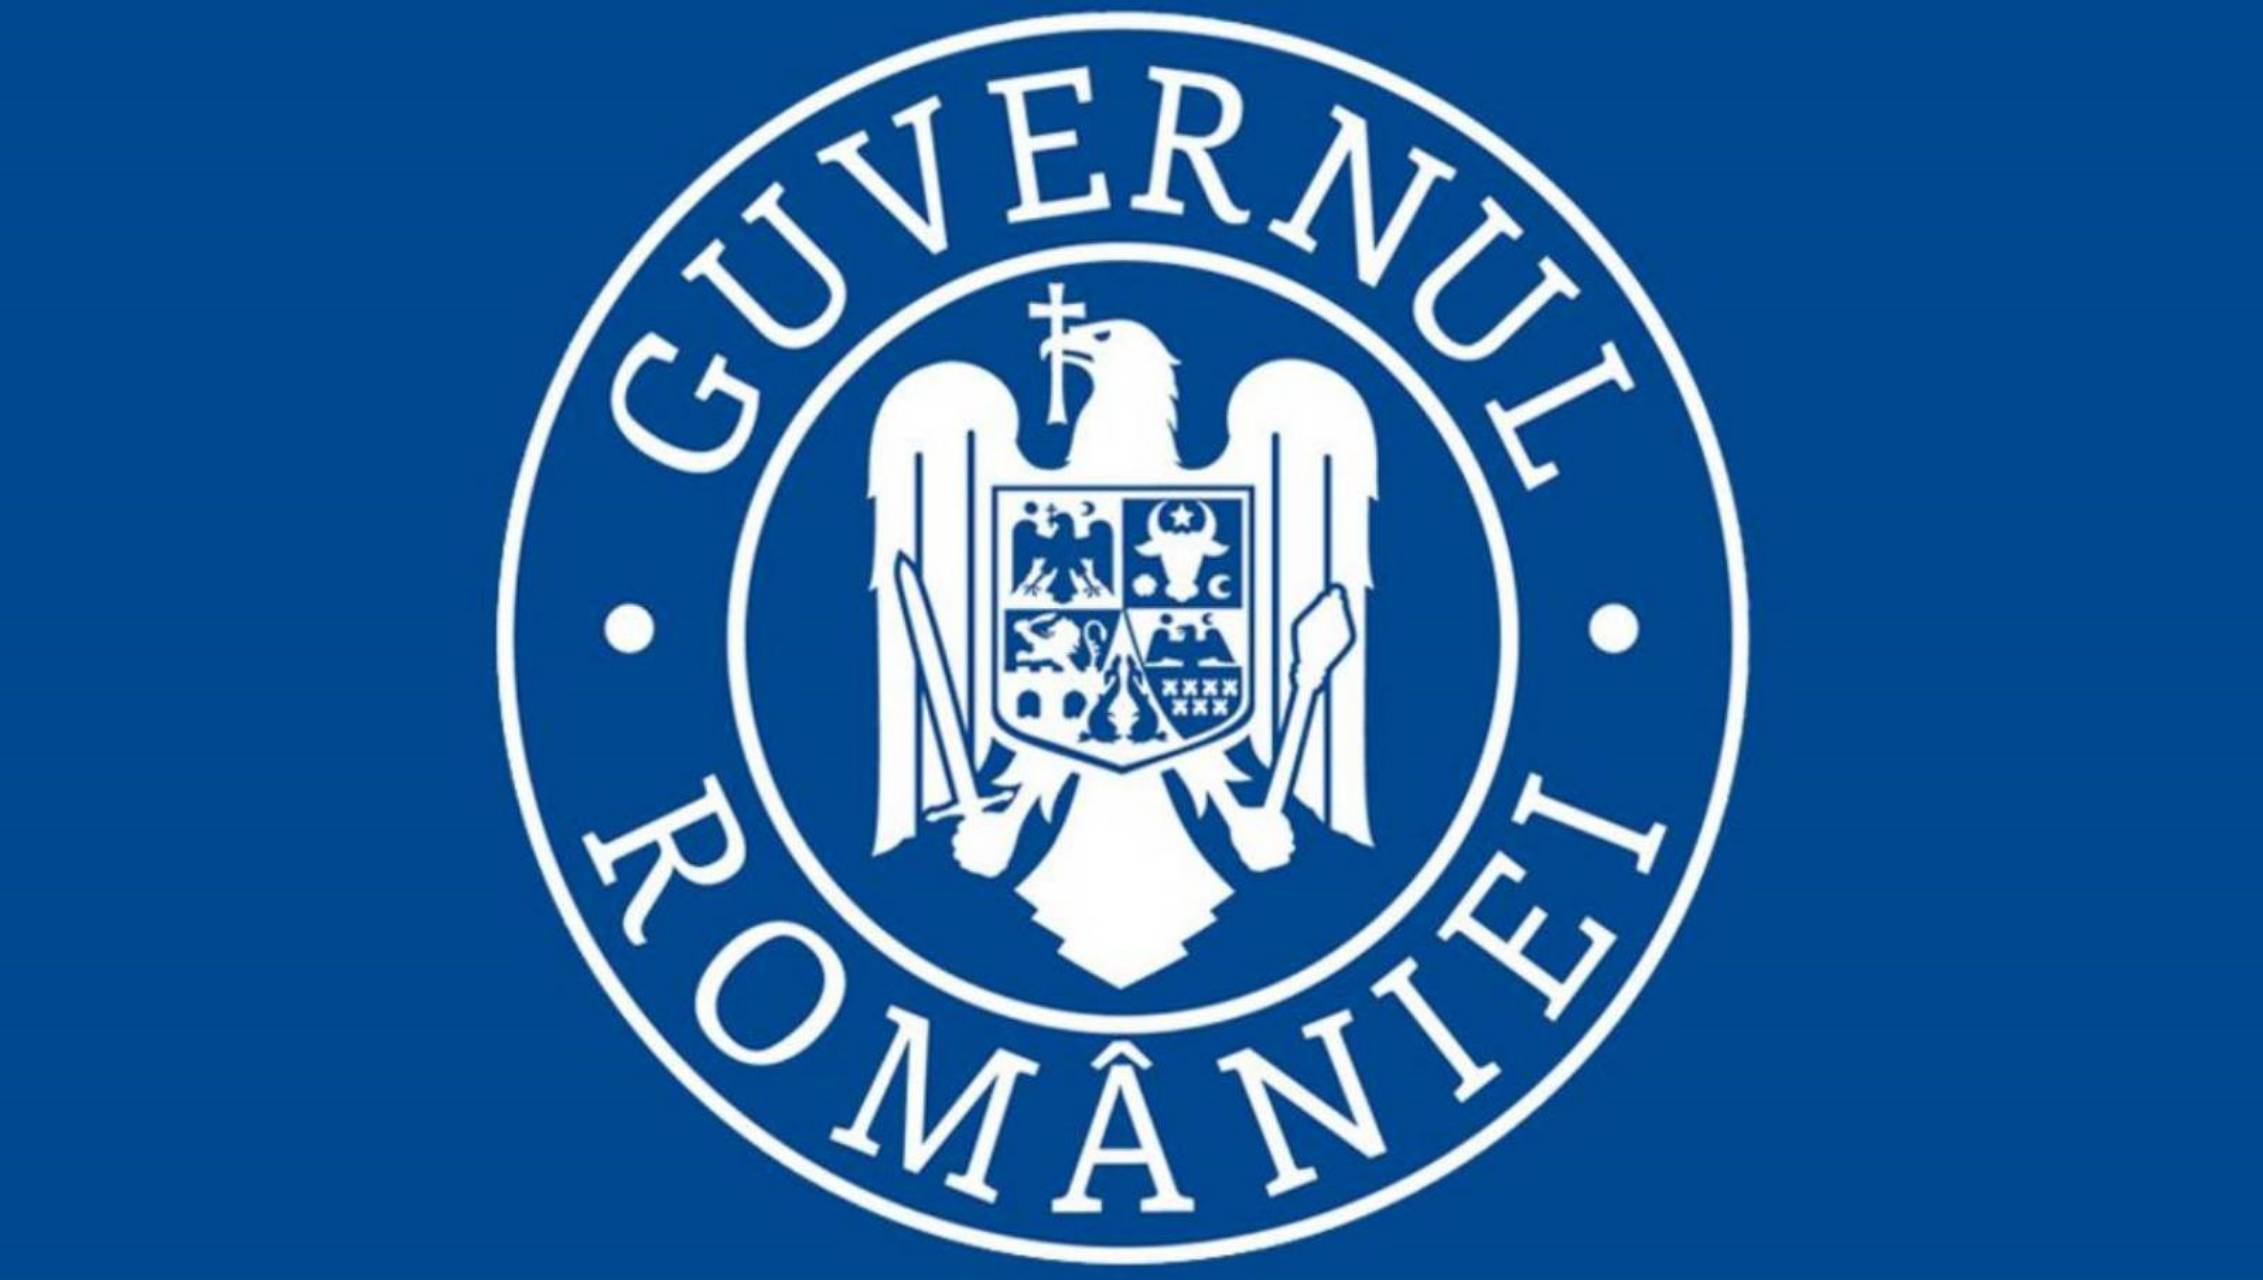 De regering van Roemenië behandelde asymptomatische patiënten thuis